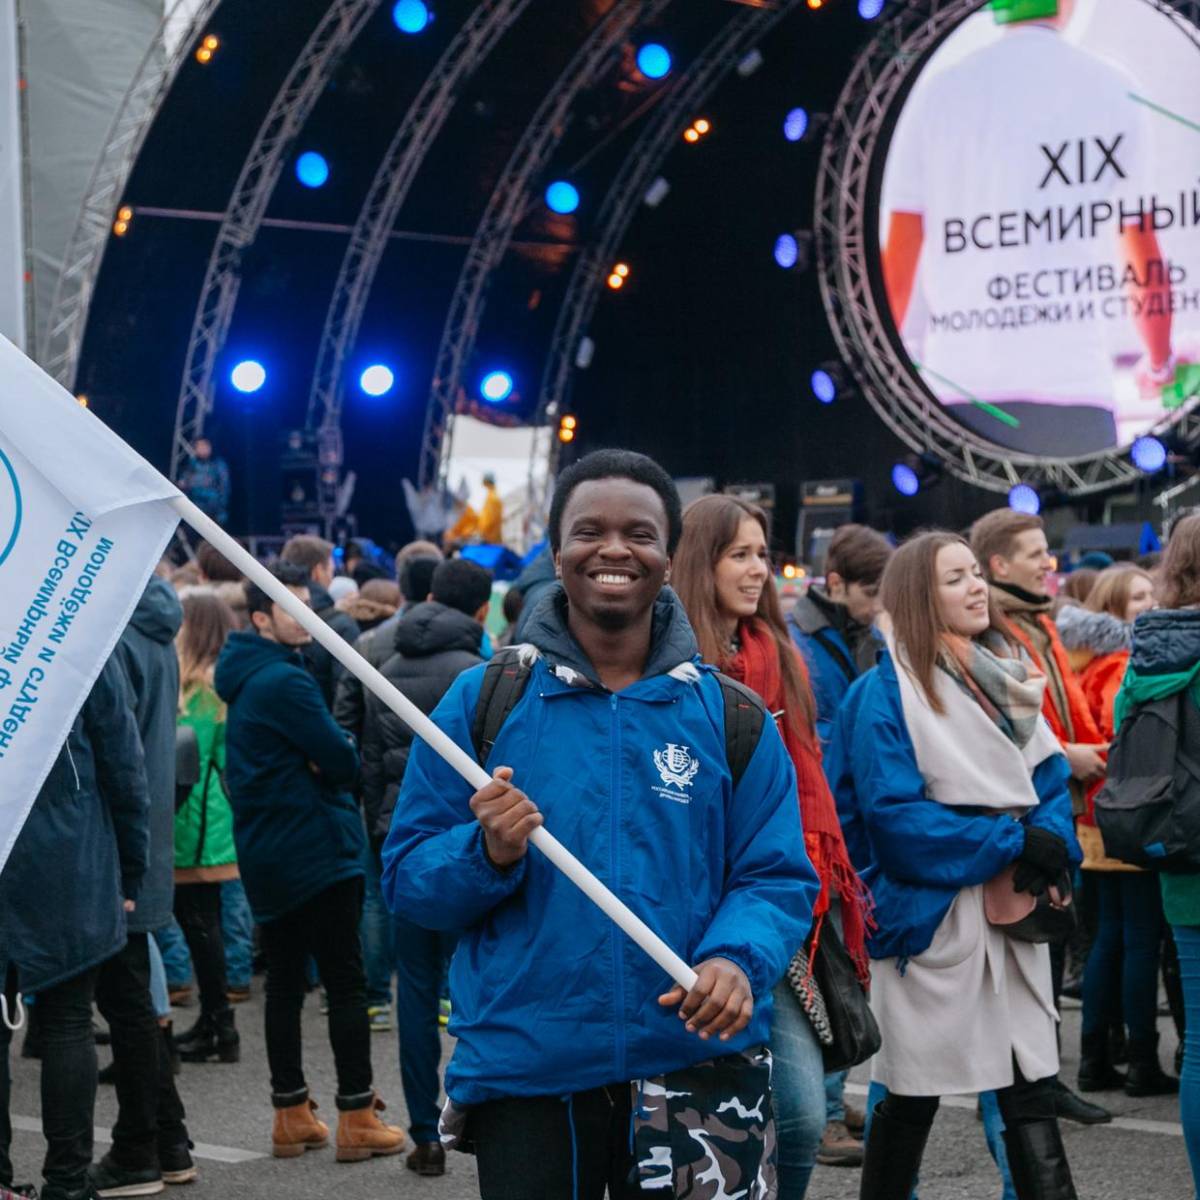 От Че Гевары к Путину: что стало с фестивалем молодежи?